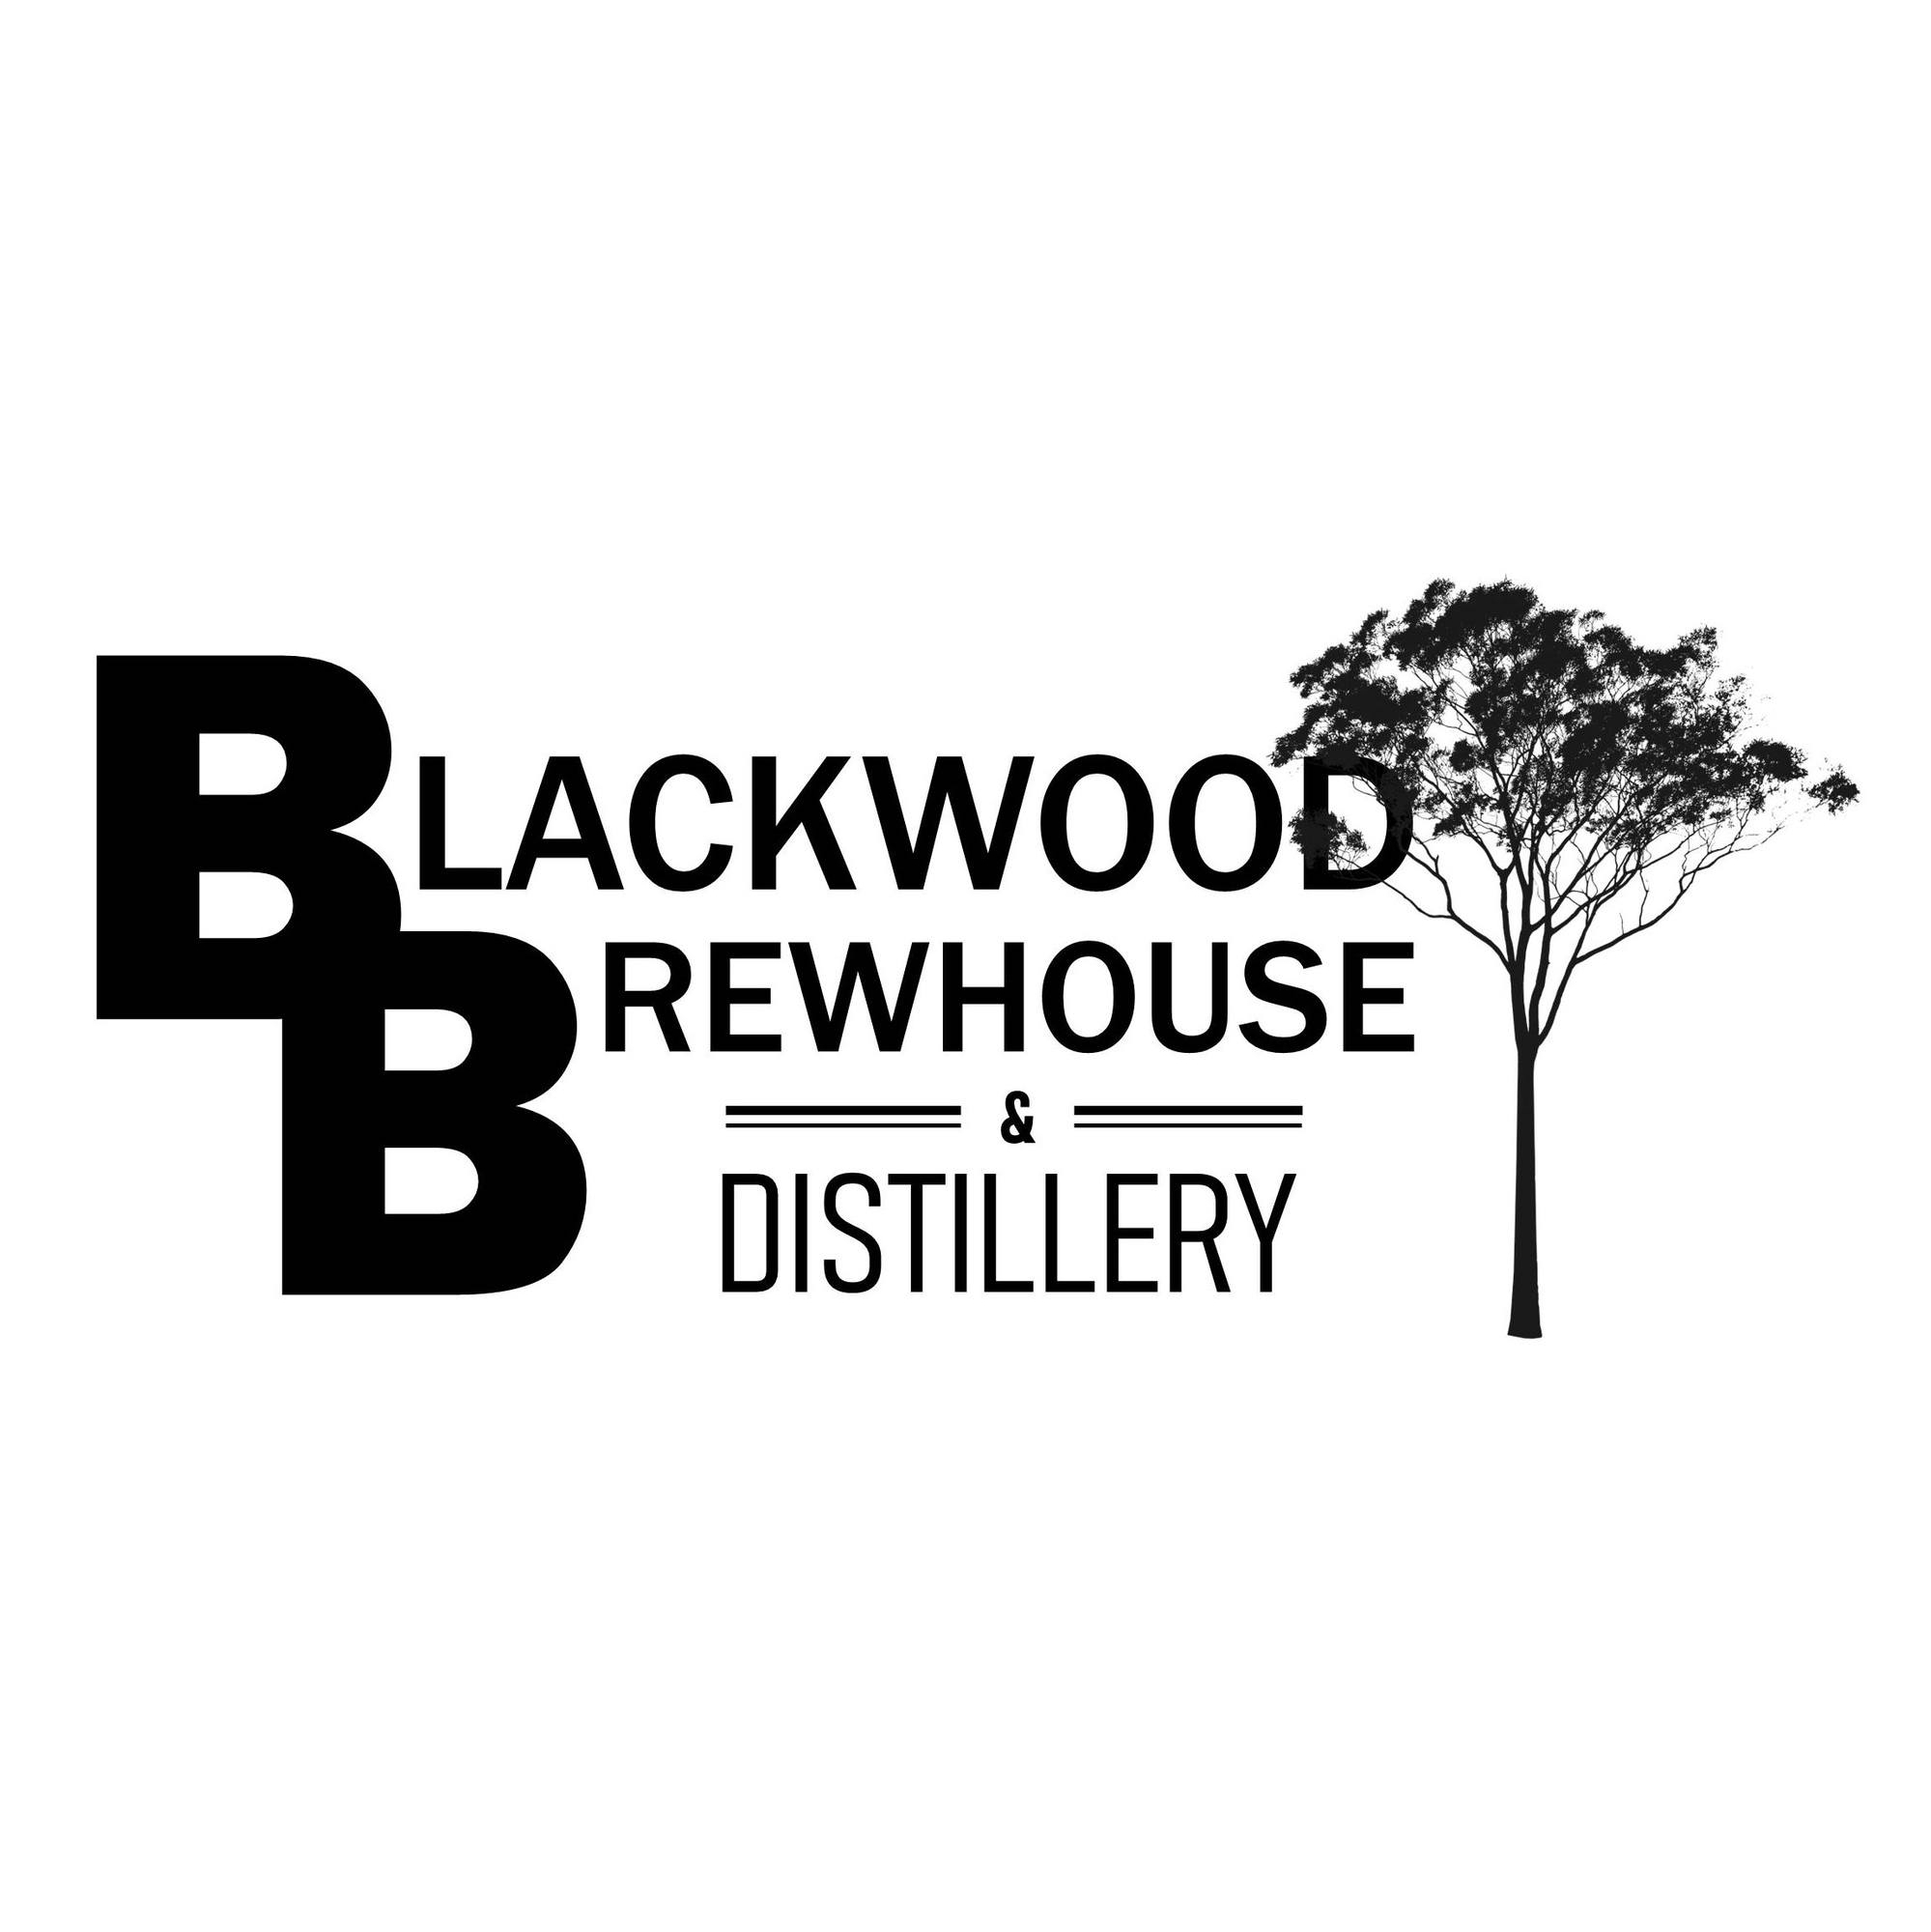 Blackwood Brewhouse & Distillery